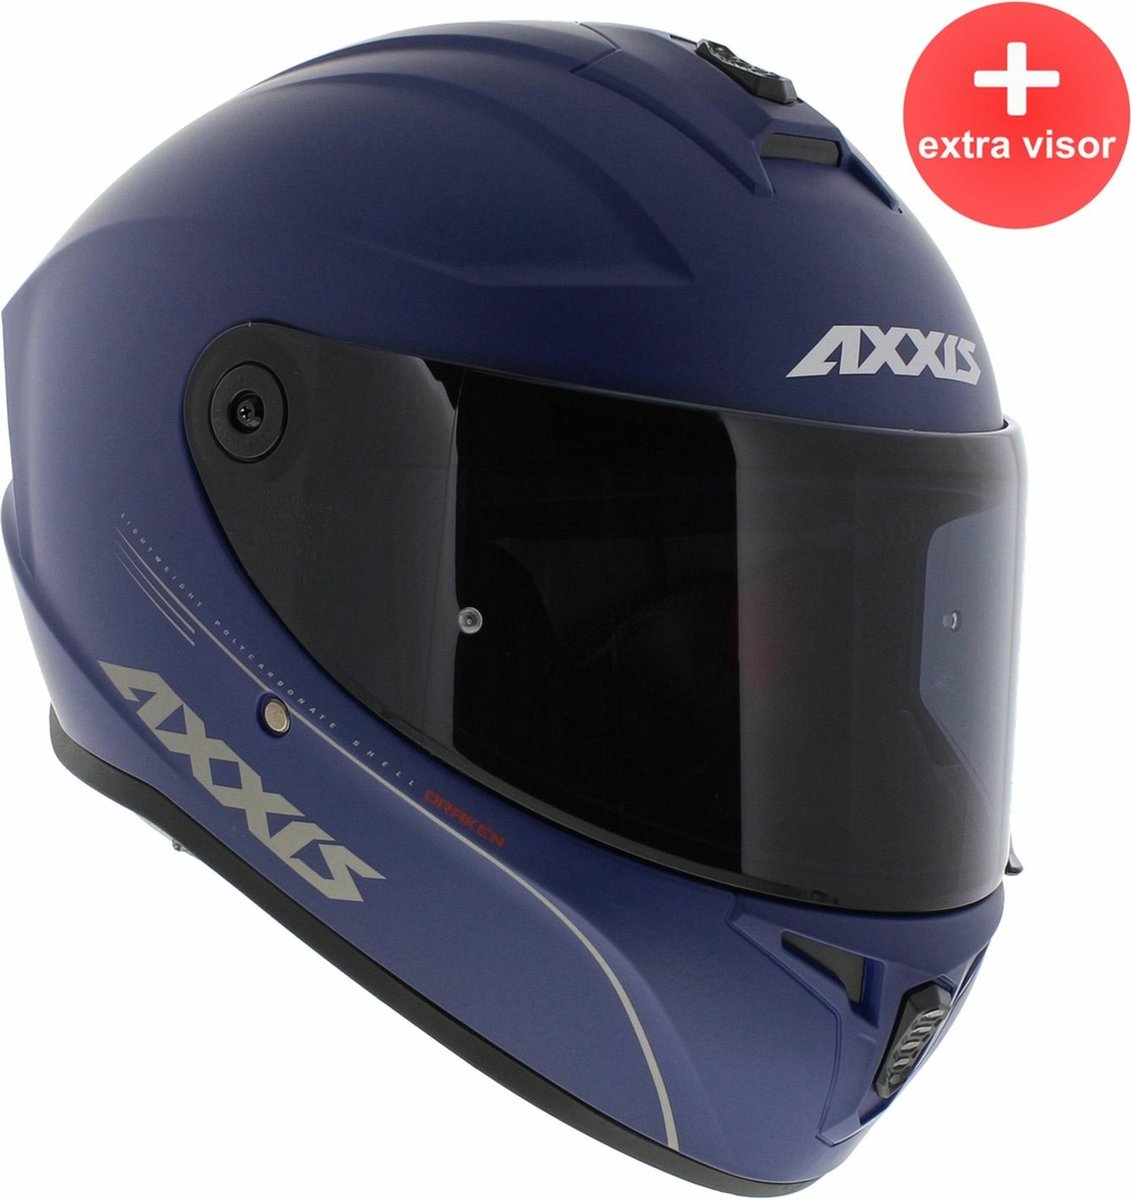 Axxis Draken S integraal helm solid mat blauw XS + extra (donker) vizier in de doos!